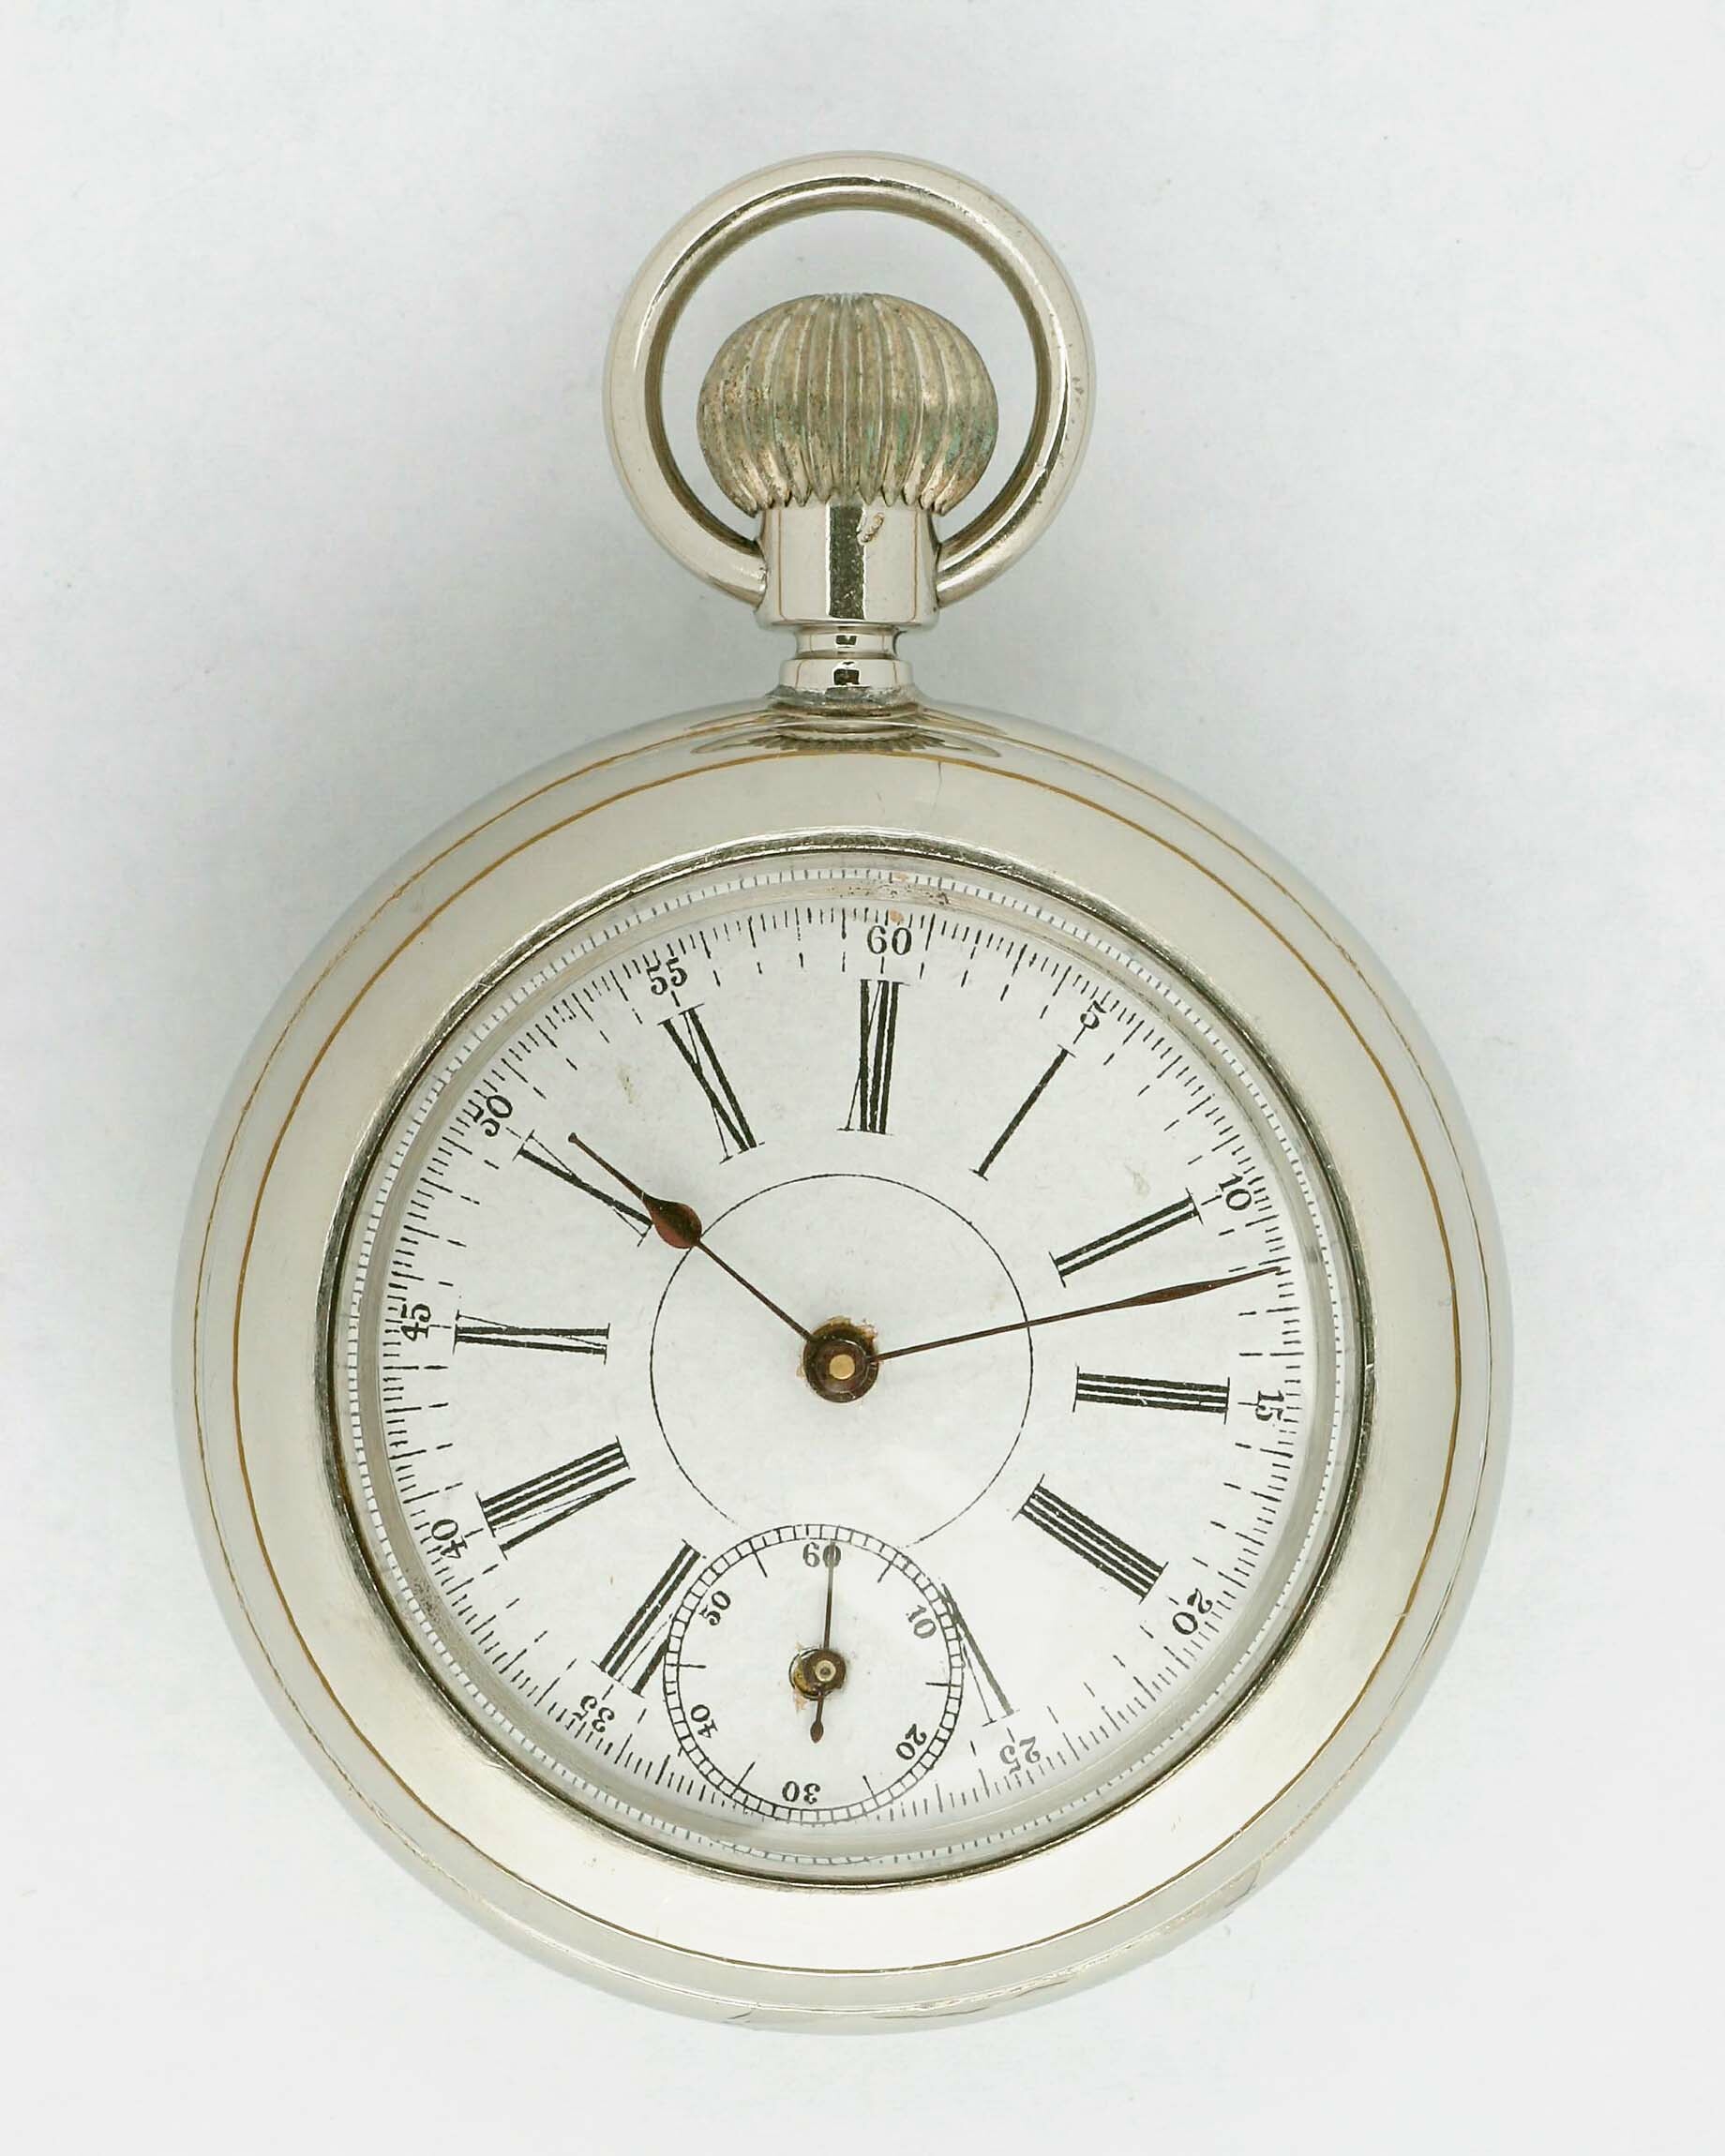 Taschenuhr, Jahresuhrenfabrik AG, Triberg, um 1900. (Deutsches Uhrenmuseum CC BY-SA)